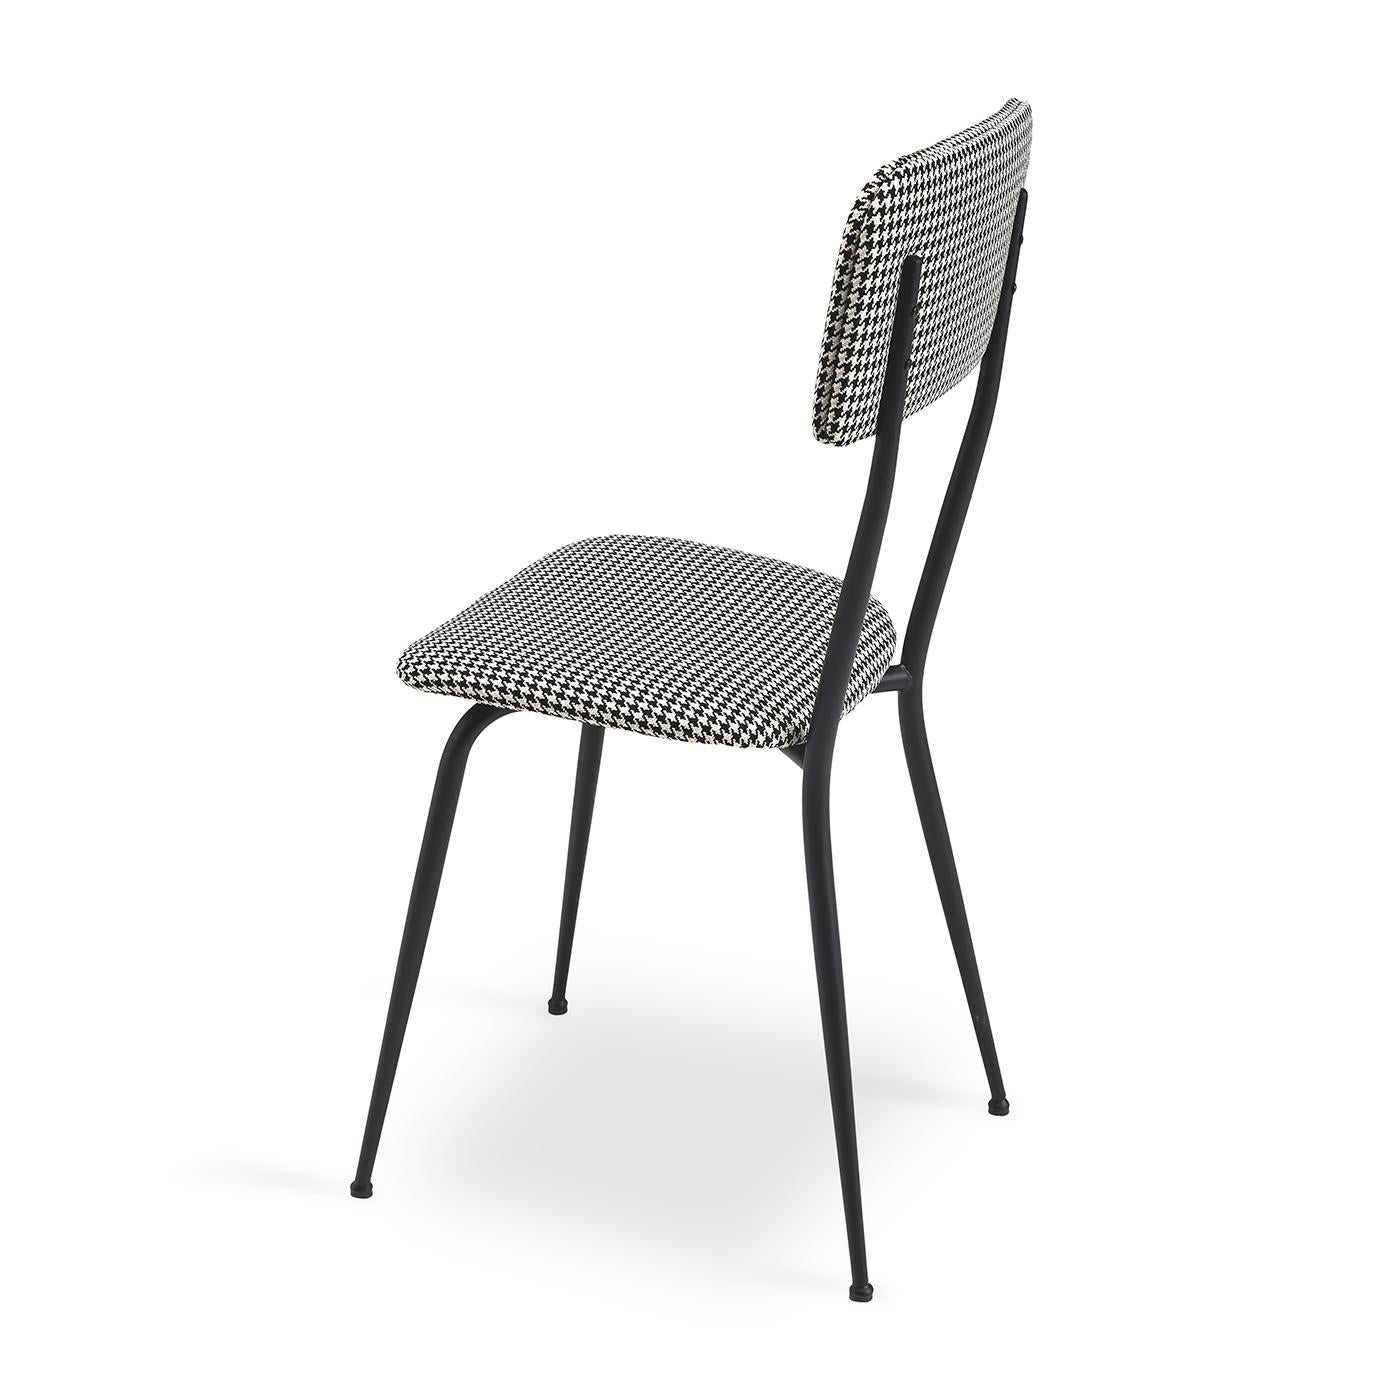 La chaise Miss Ava 2 combine un style moderne et traditionnel dans un design élégant sans effort. Les pieds en métal épurés avec une finition laquée noire donnent une touche contemporaine, tandis que le dossier et l'assise rembourrés présentent un